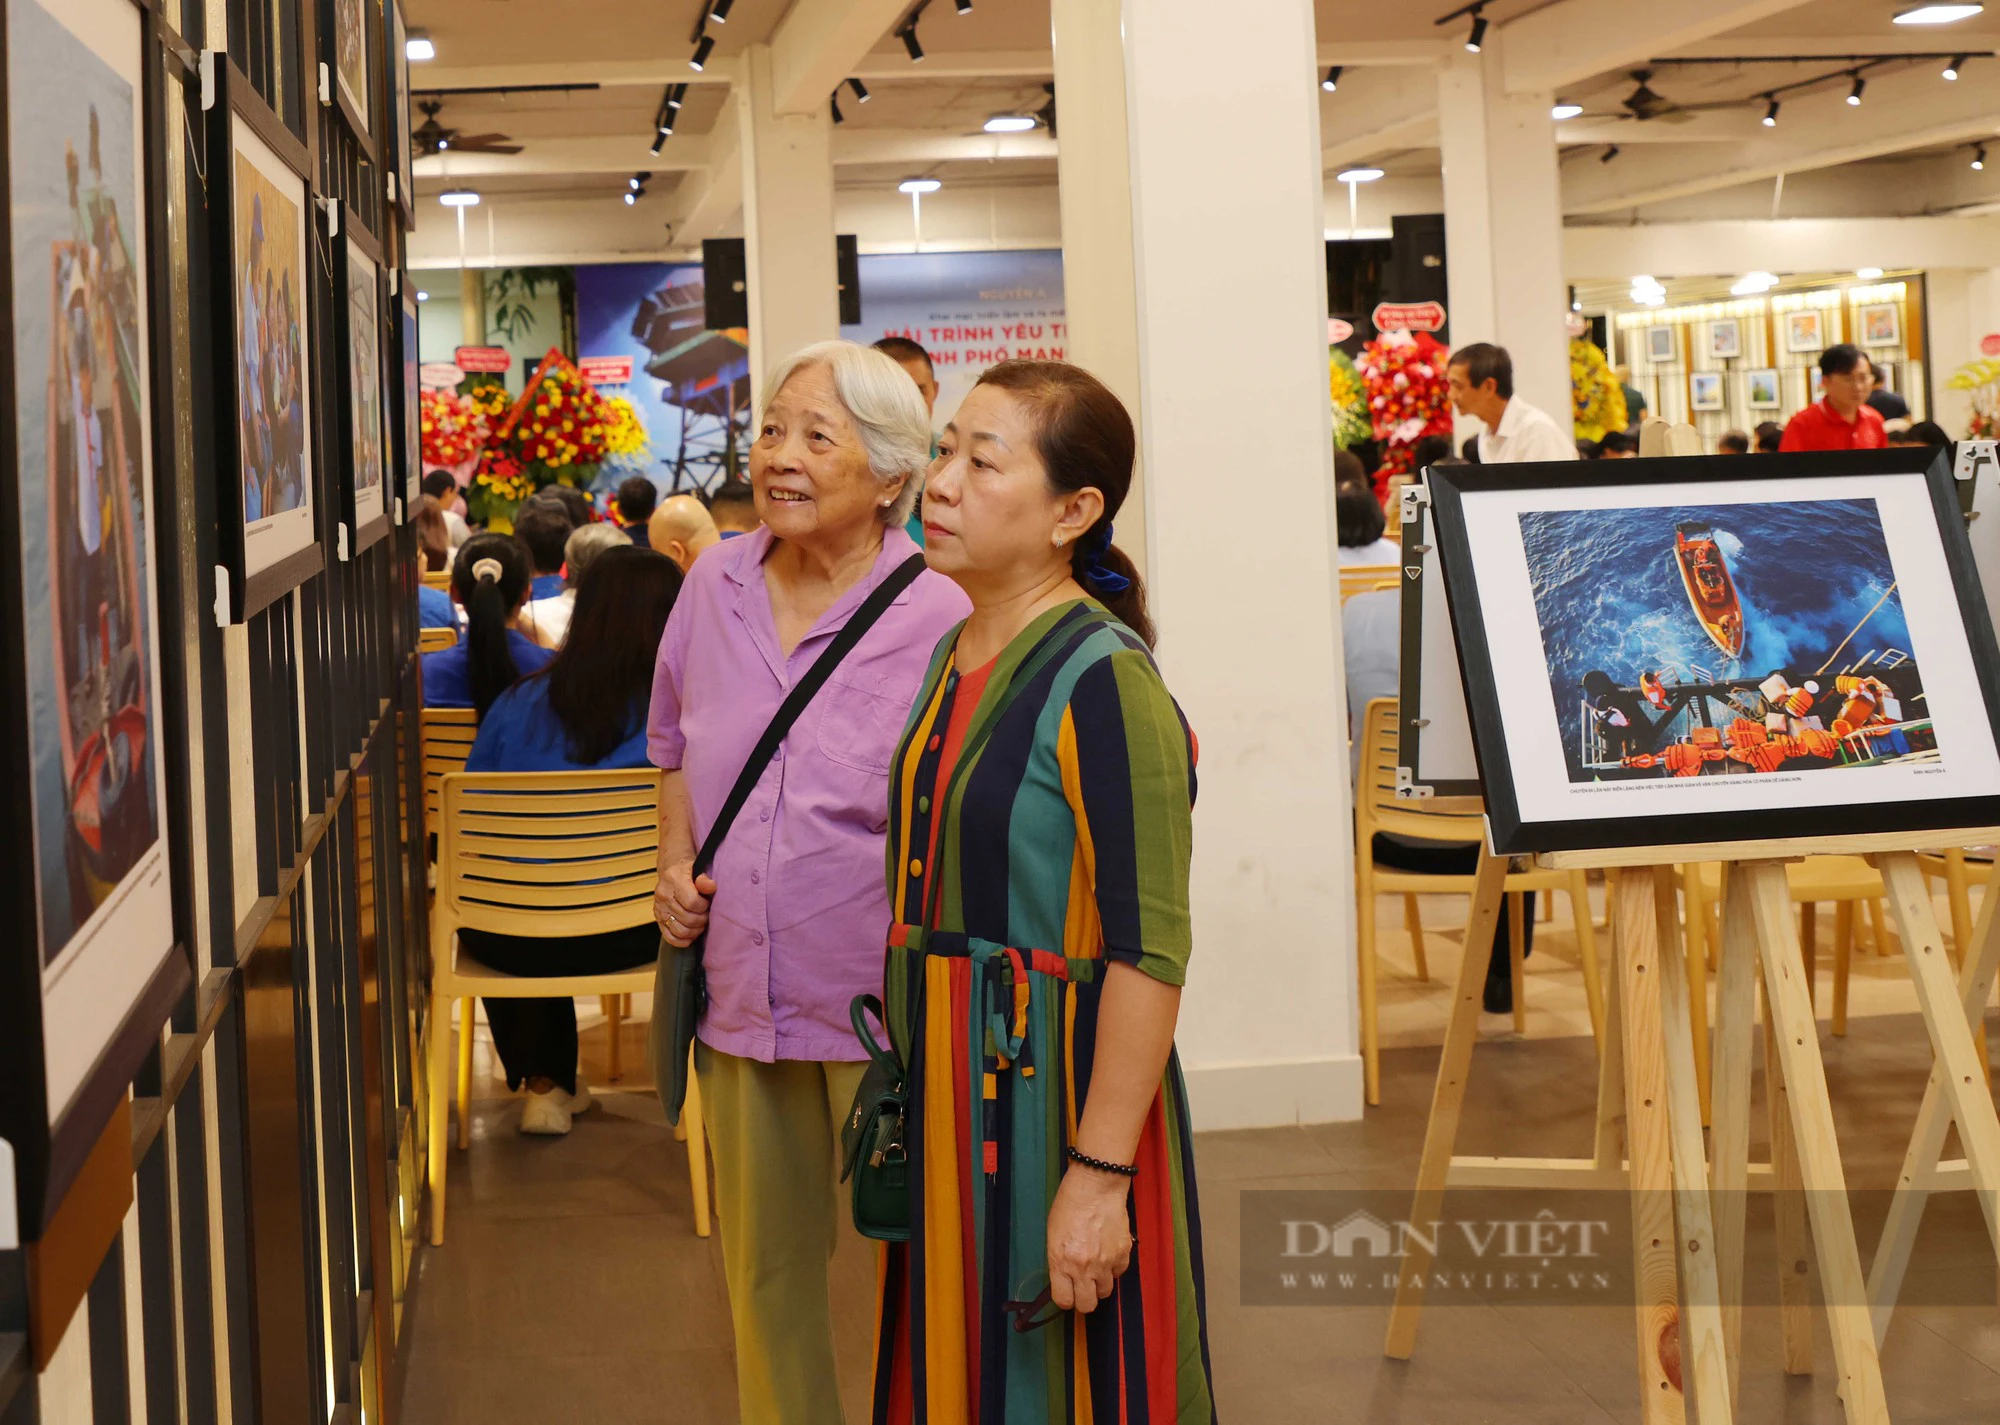 Nhiếp ảnh gia Nguyễn Á ra mắt sách ảnh “Hải trình yêu thương từ Thành phố mang tên Bác” - Ảnh 3.